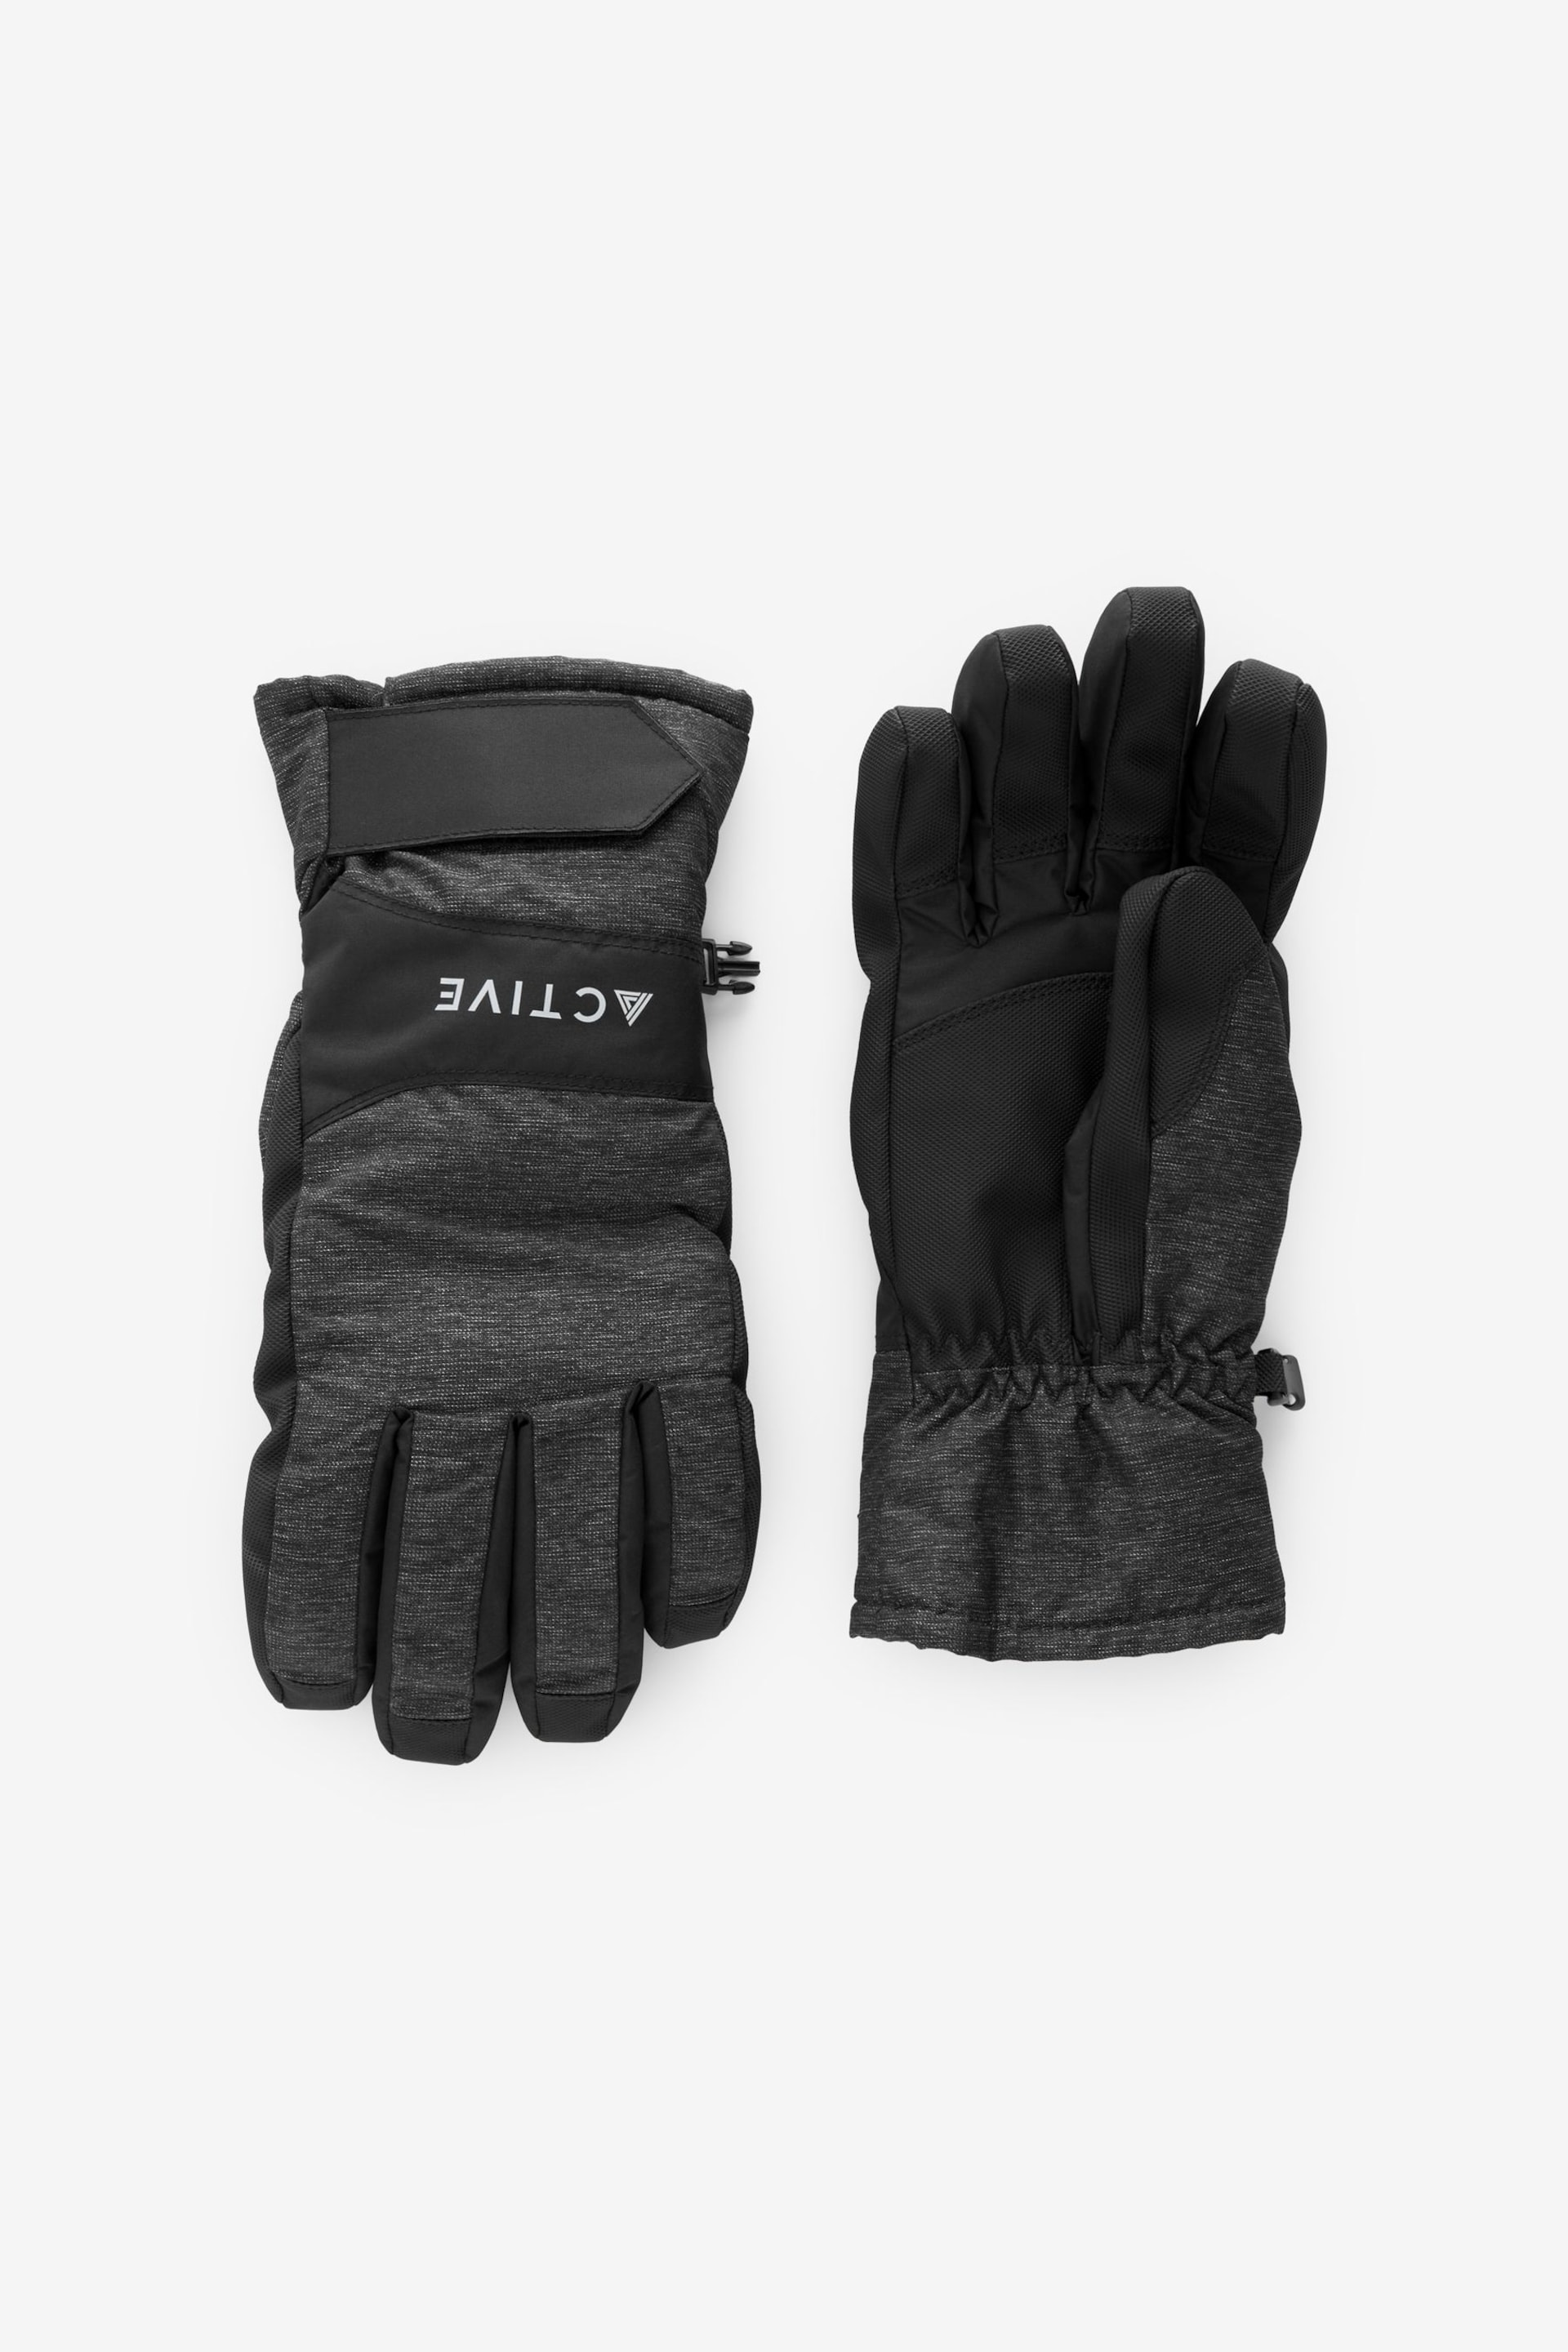 Black Ski Gloves - Image 2 of 5